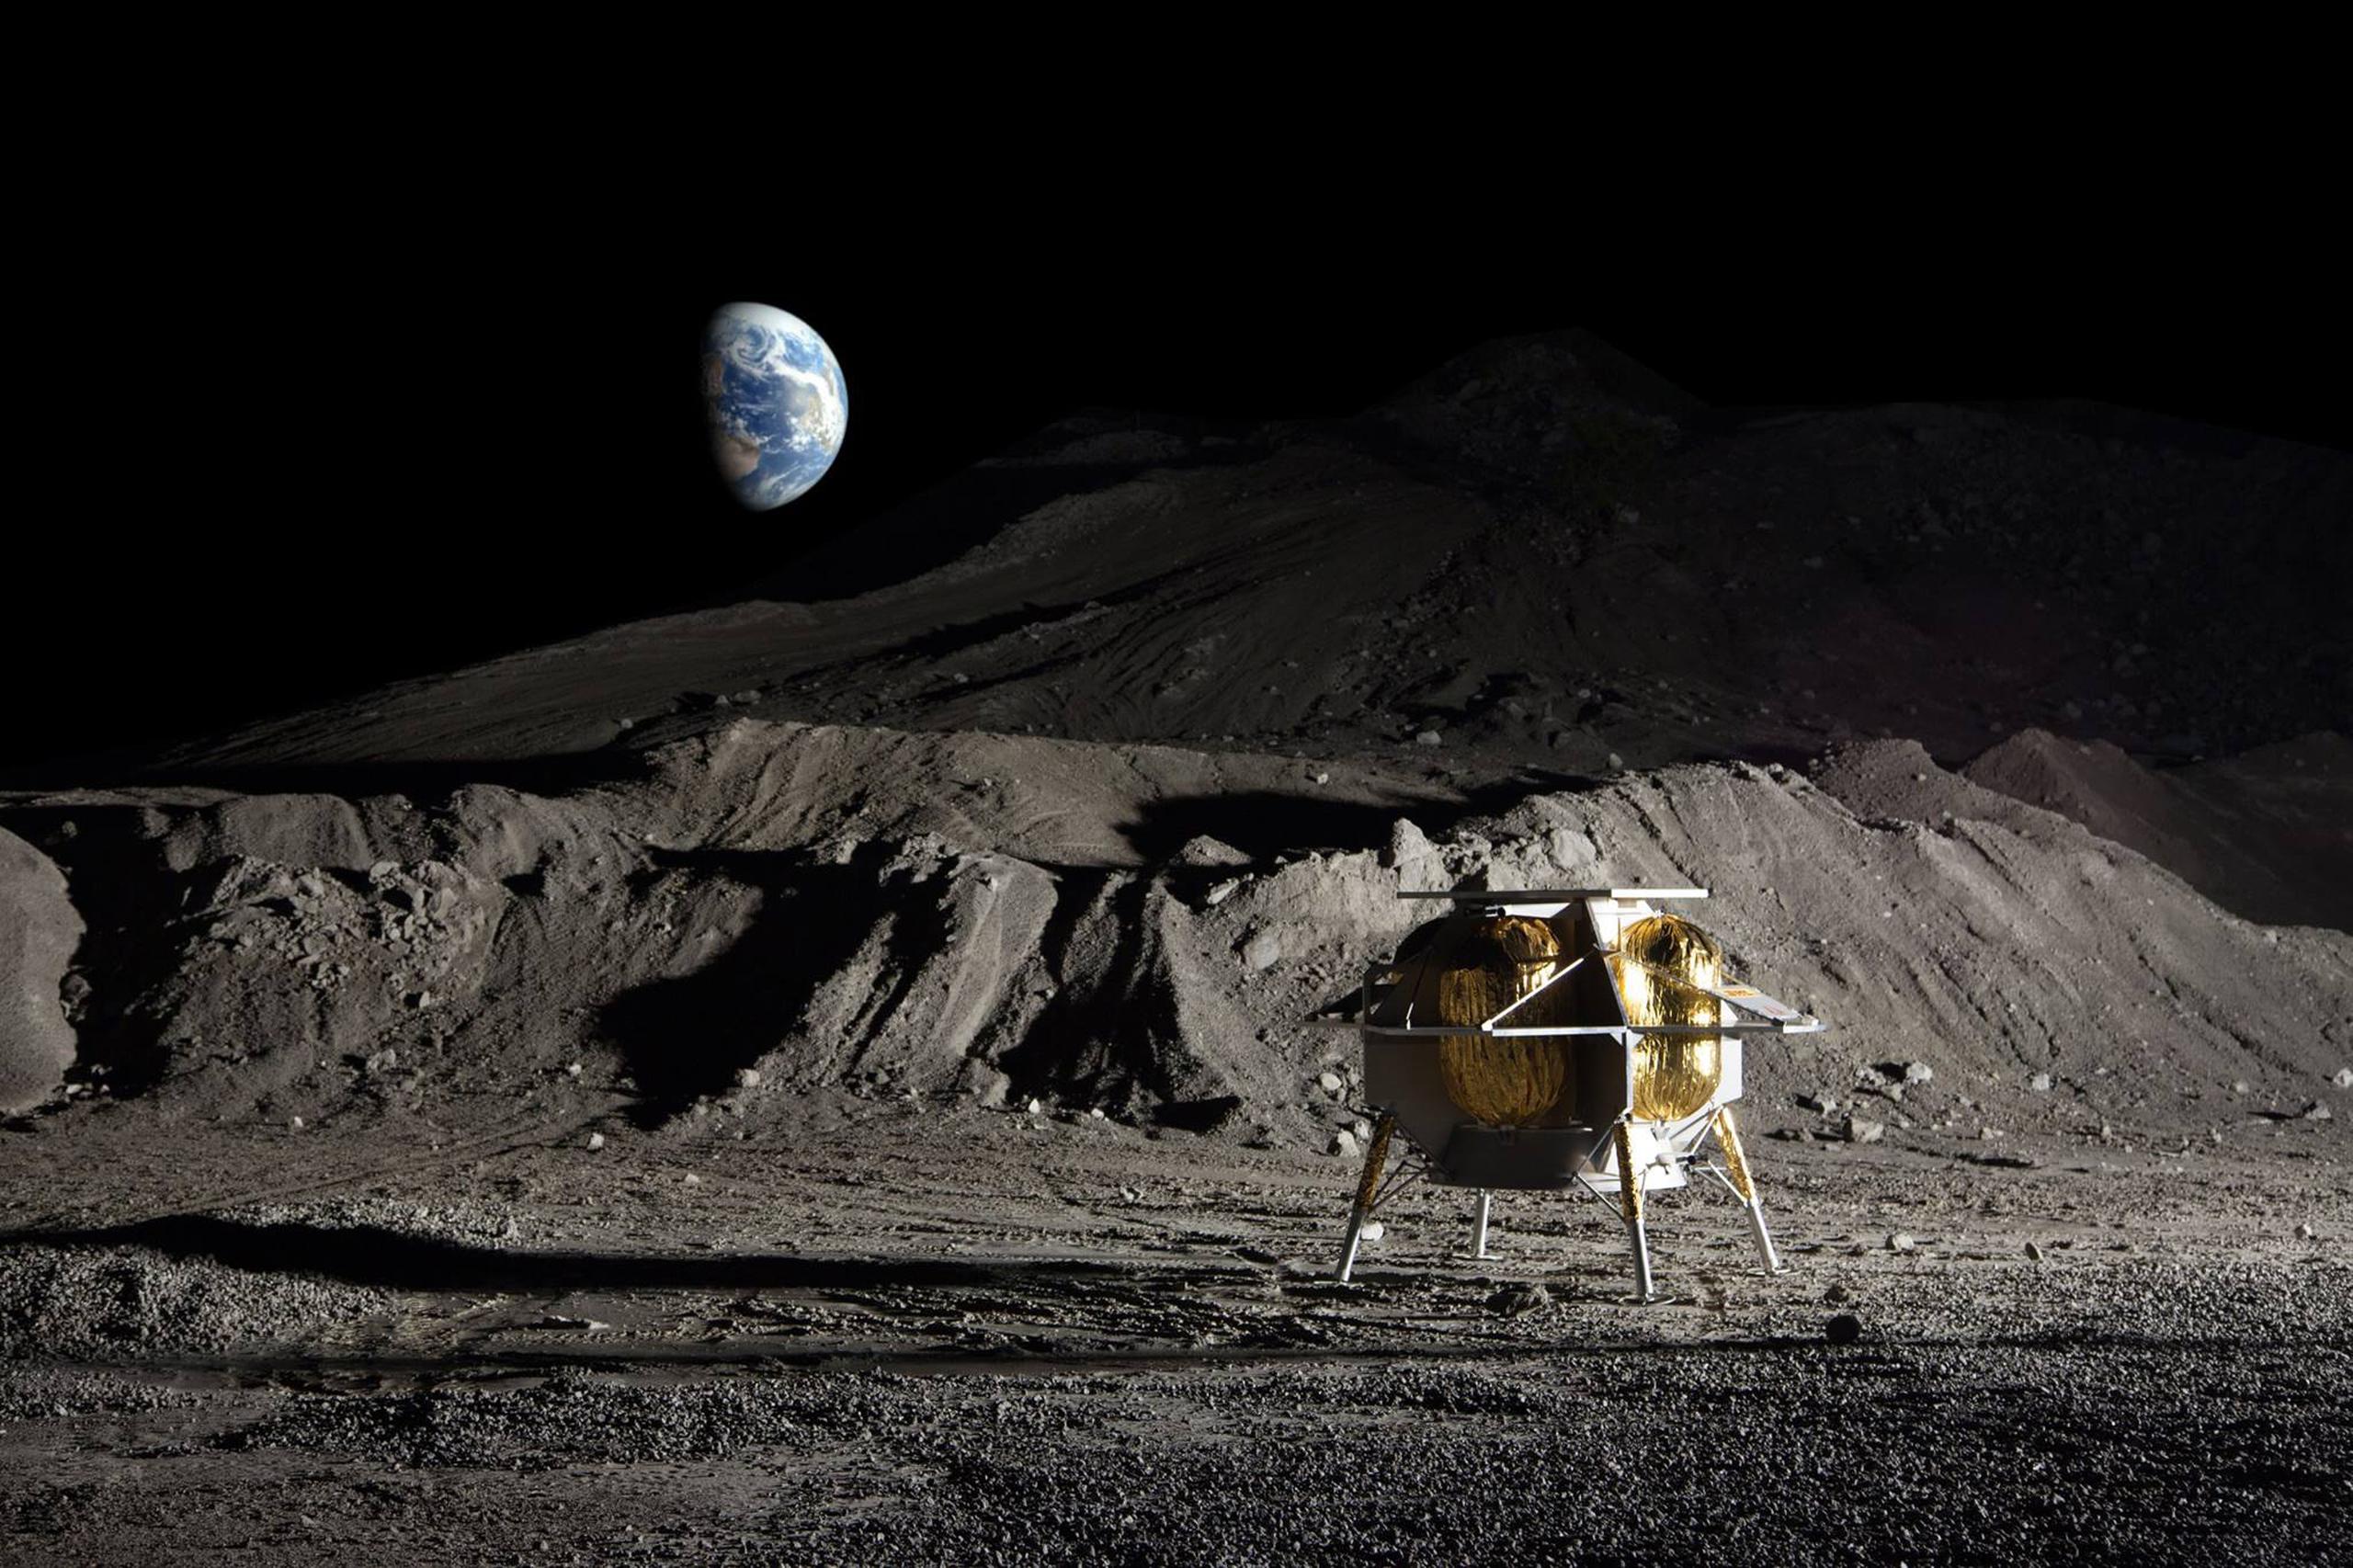 El módulo de aterrizaje lunar, llamado Peregrine, no llevará a nadie a bordo, pero transportará cinco instrumentos científicos de la NASA, que quiere estudiar el entorno lunar como preparación para sus misiones tripuladas Artemis.